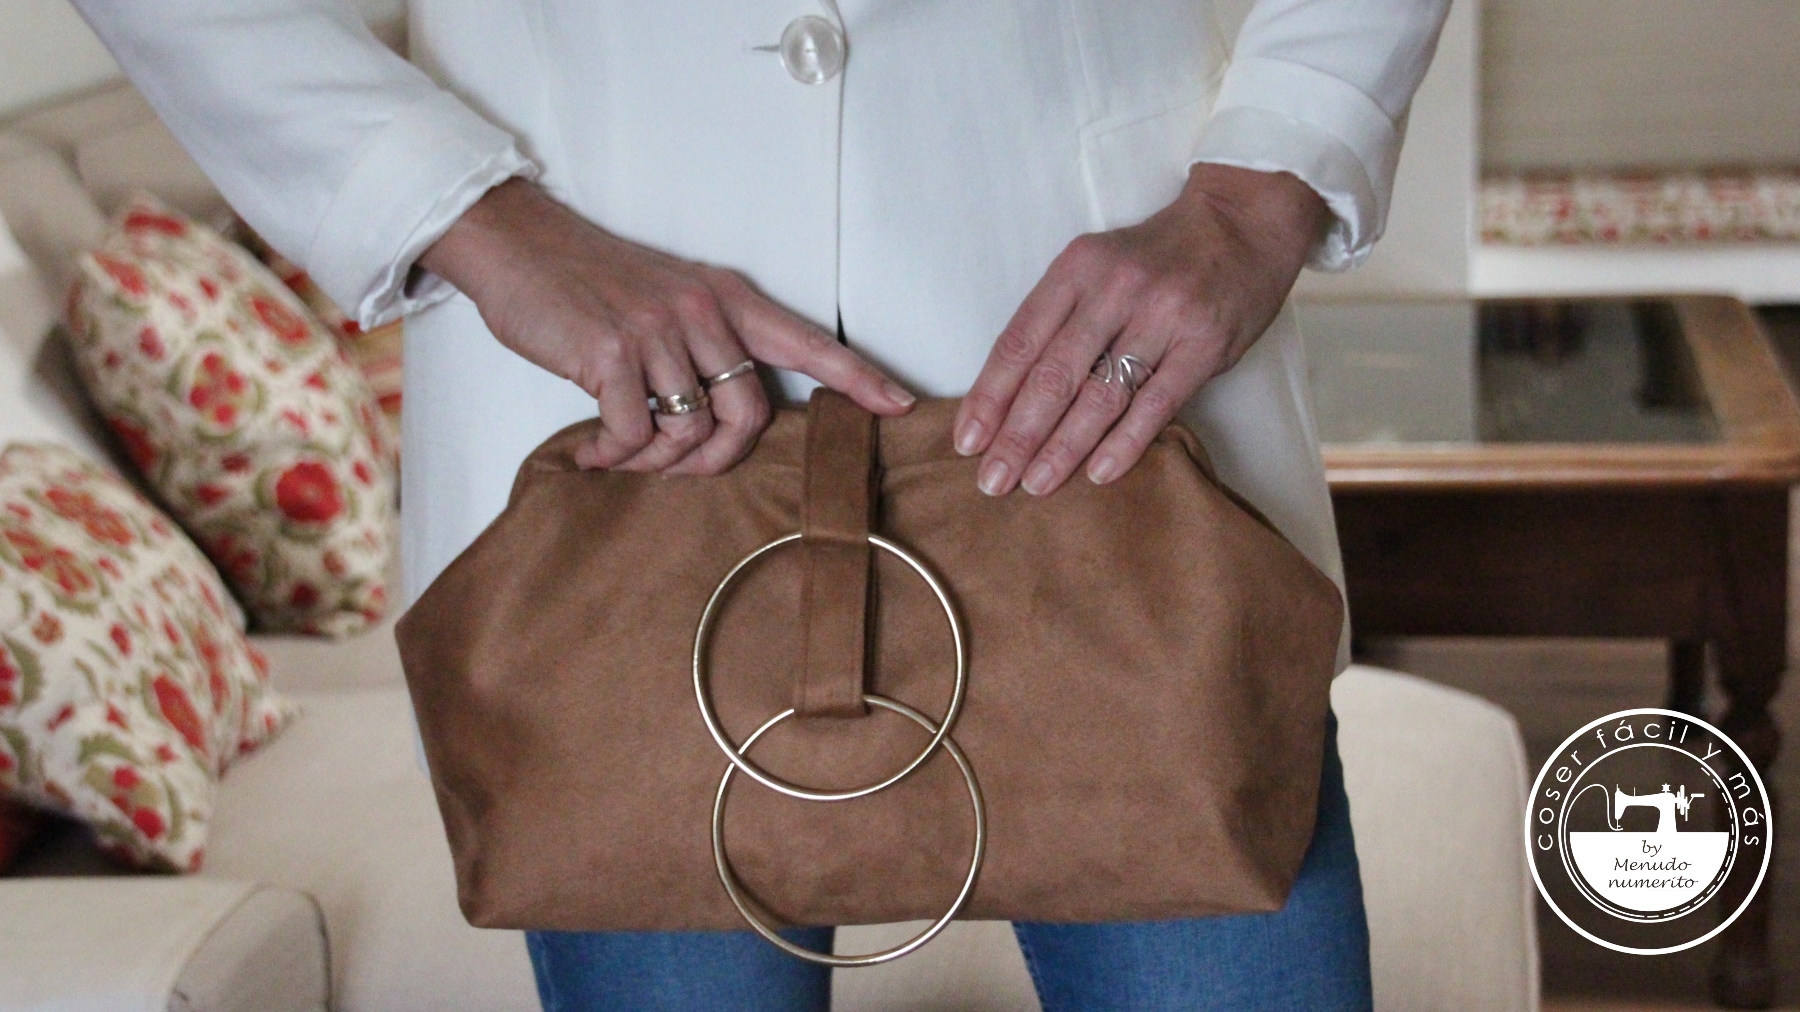 bolso de mano con pulsera clutch menudo numerito blogs de costura